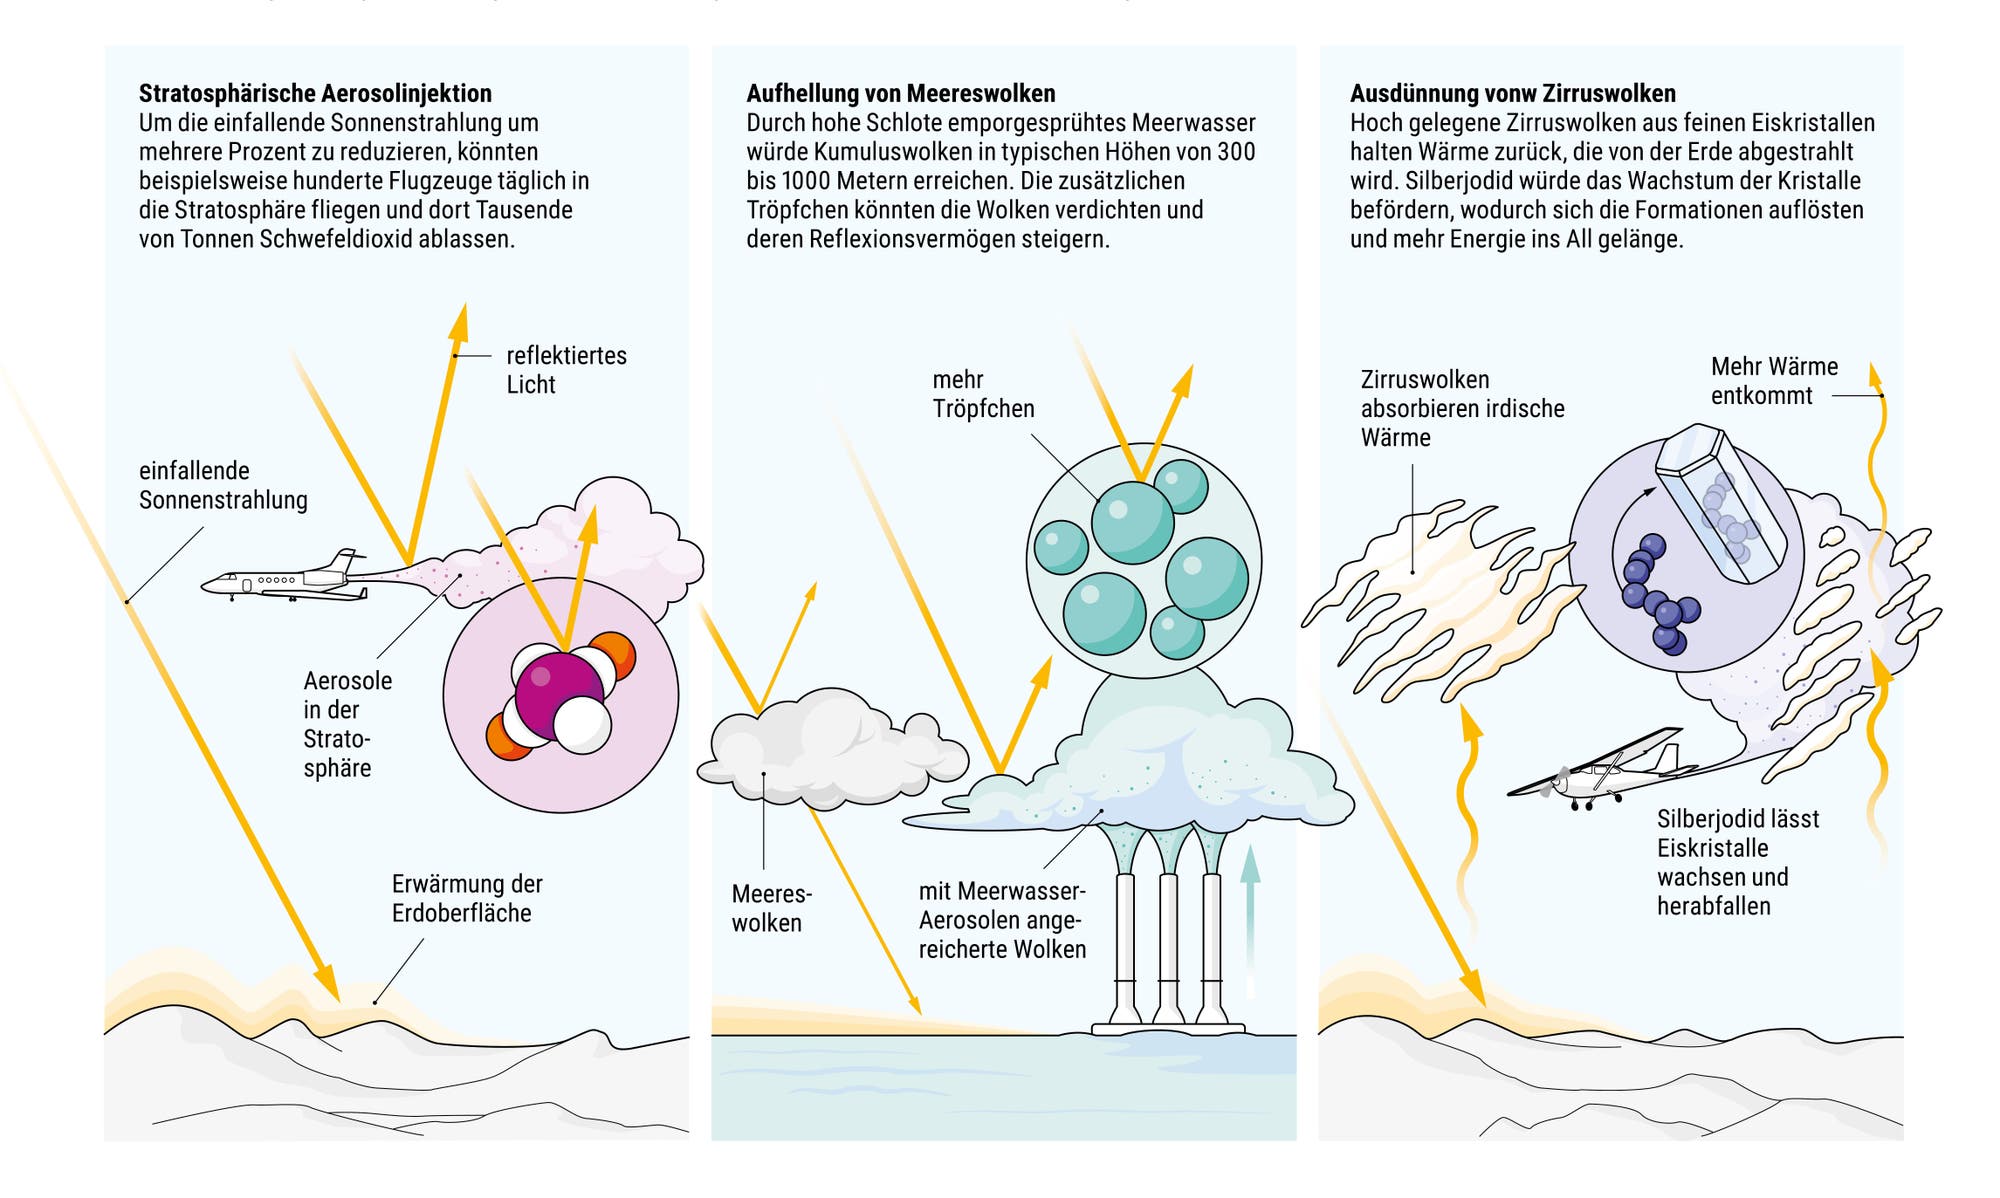 Illustration dreier Methoden des Geoengineering: stratosphärische Aerosolinjektion, Aufhellung von Meereswolken, Ausdünnung von Zirruswolken